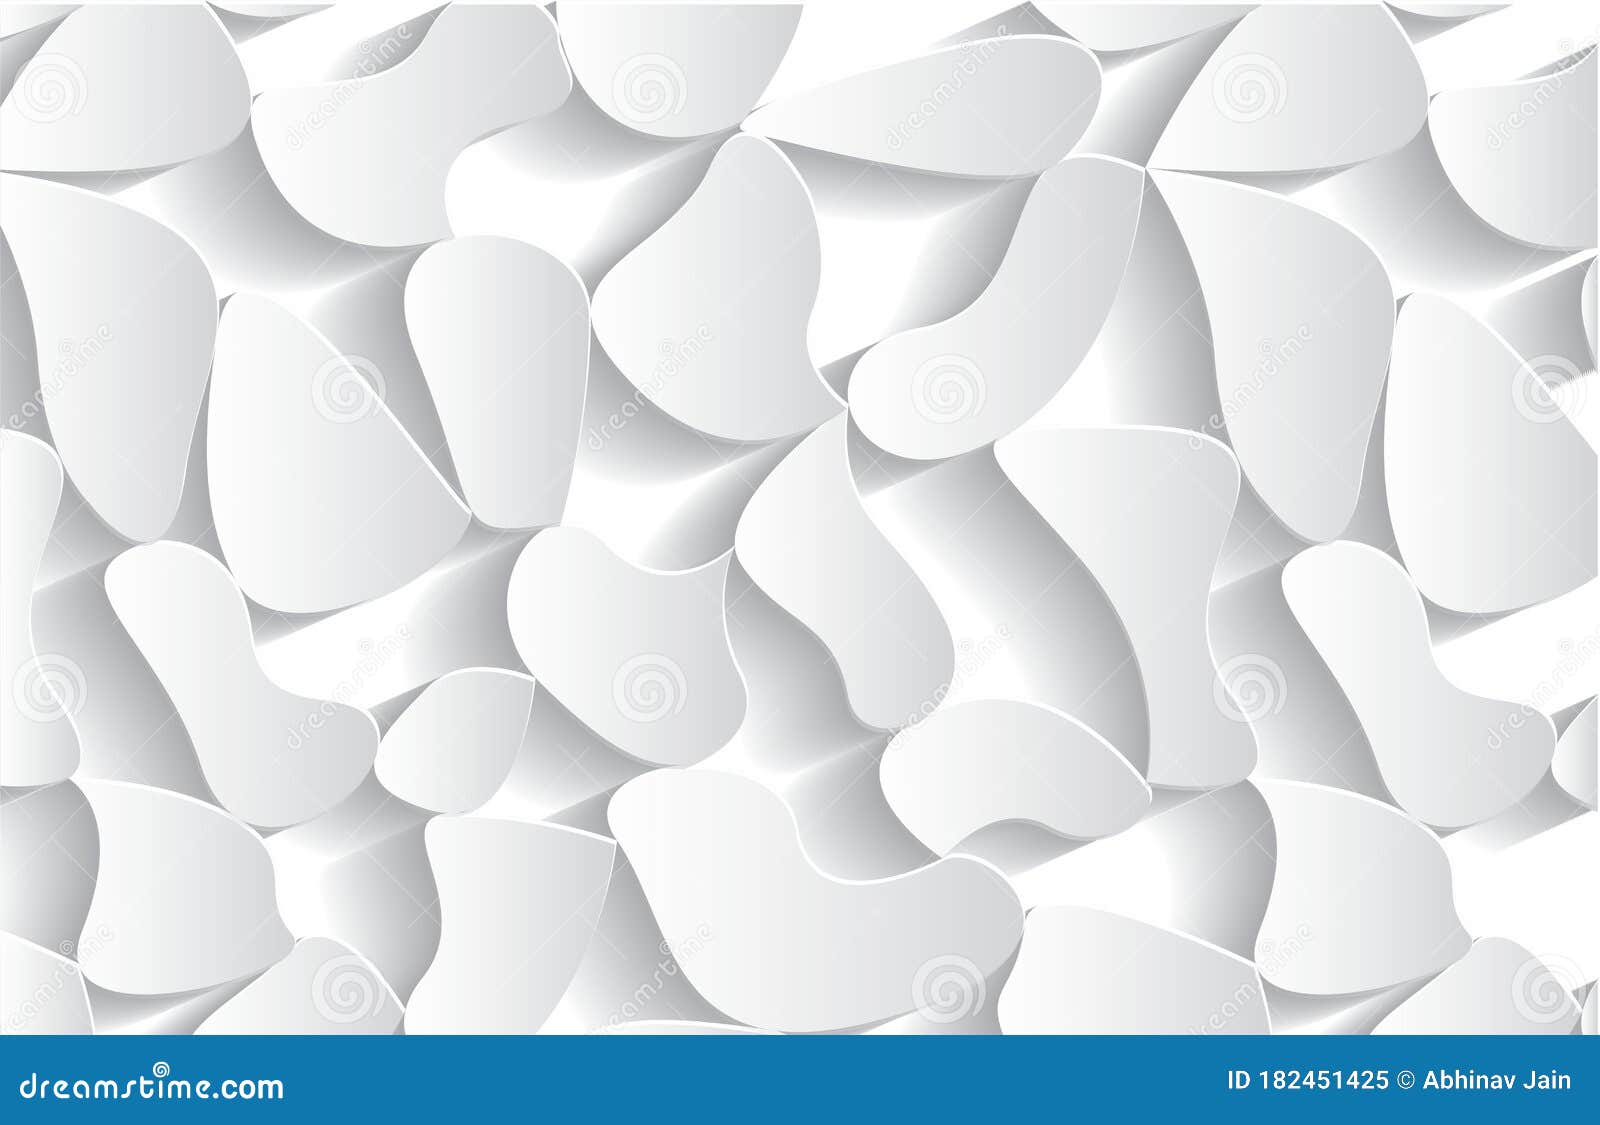 Thiết kế nền trừu tượng đá trắng 3D vector là sự kết hợp hoàn hảo giữa đơn giản nhưng không tầm thường. Với sự tinh tế trong từng chi tiết, nền trắng trừu tượng đá trắng 3D vector mang đến sự hiện đại, sang trọng và đẳng cấp cho không gian của bạn. Hãy sử dụng thiết kế này để phục vụ cho công việc của mình hoặc trang trí cho không gian cá nhân của bạn.